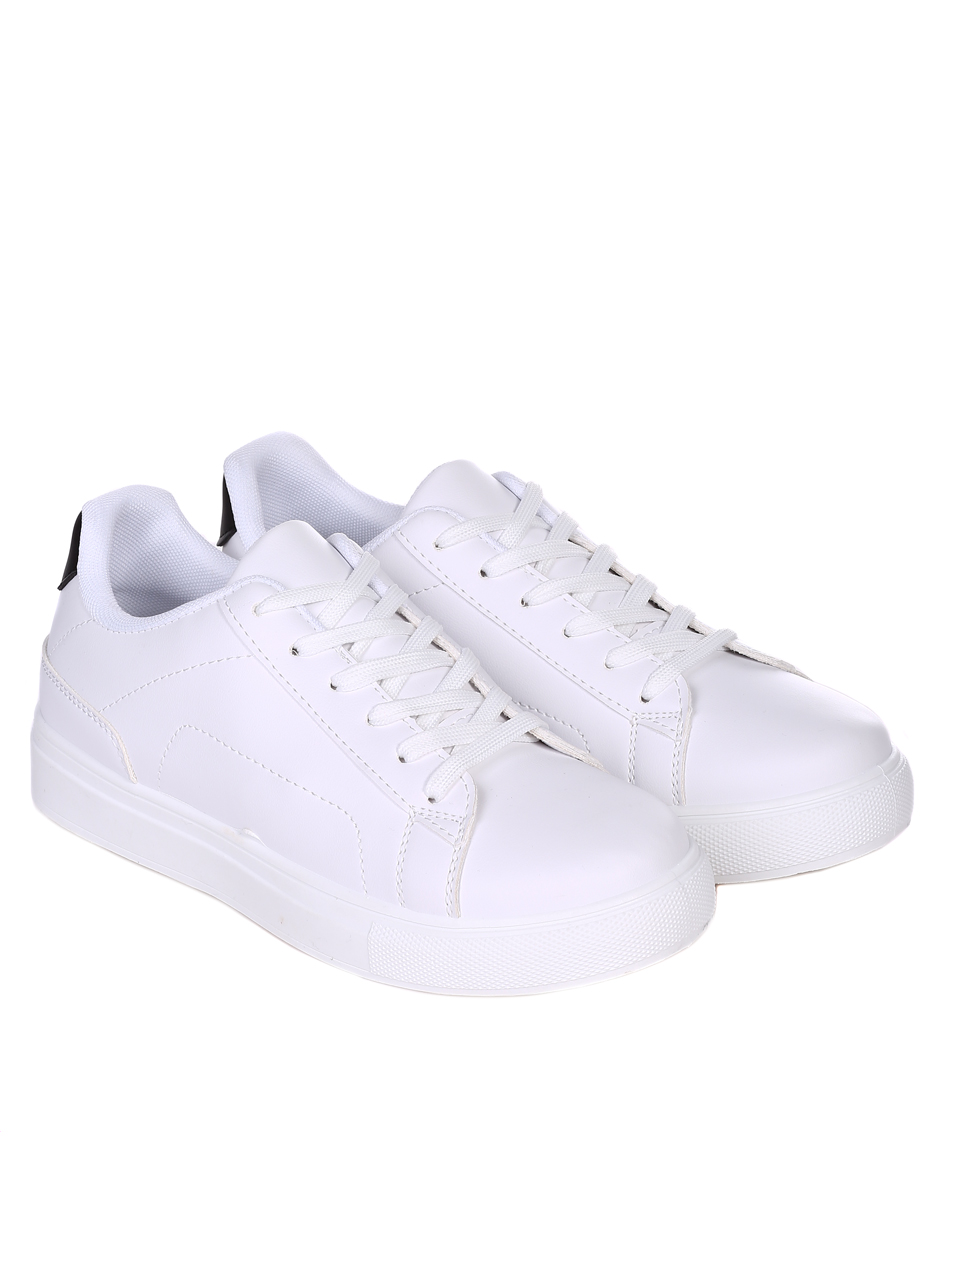 Ежедневни мъжки обувки в бяло 7U-22010 white